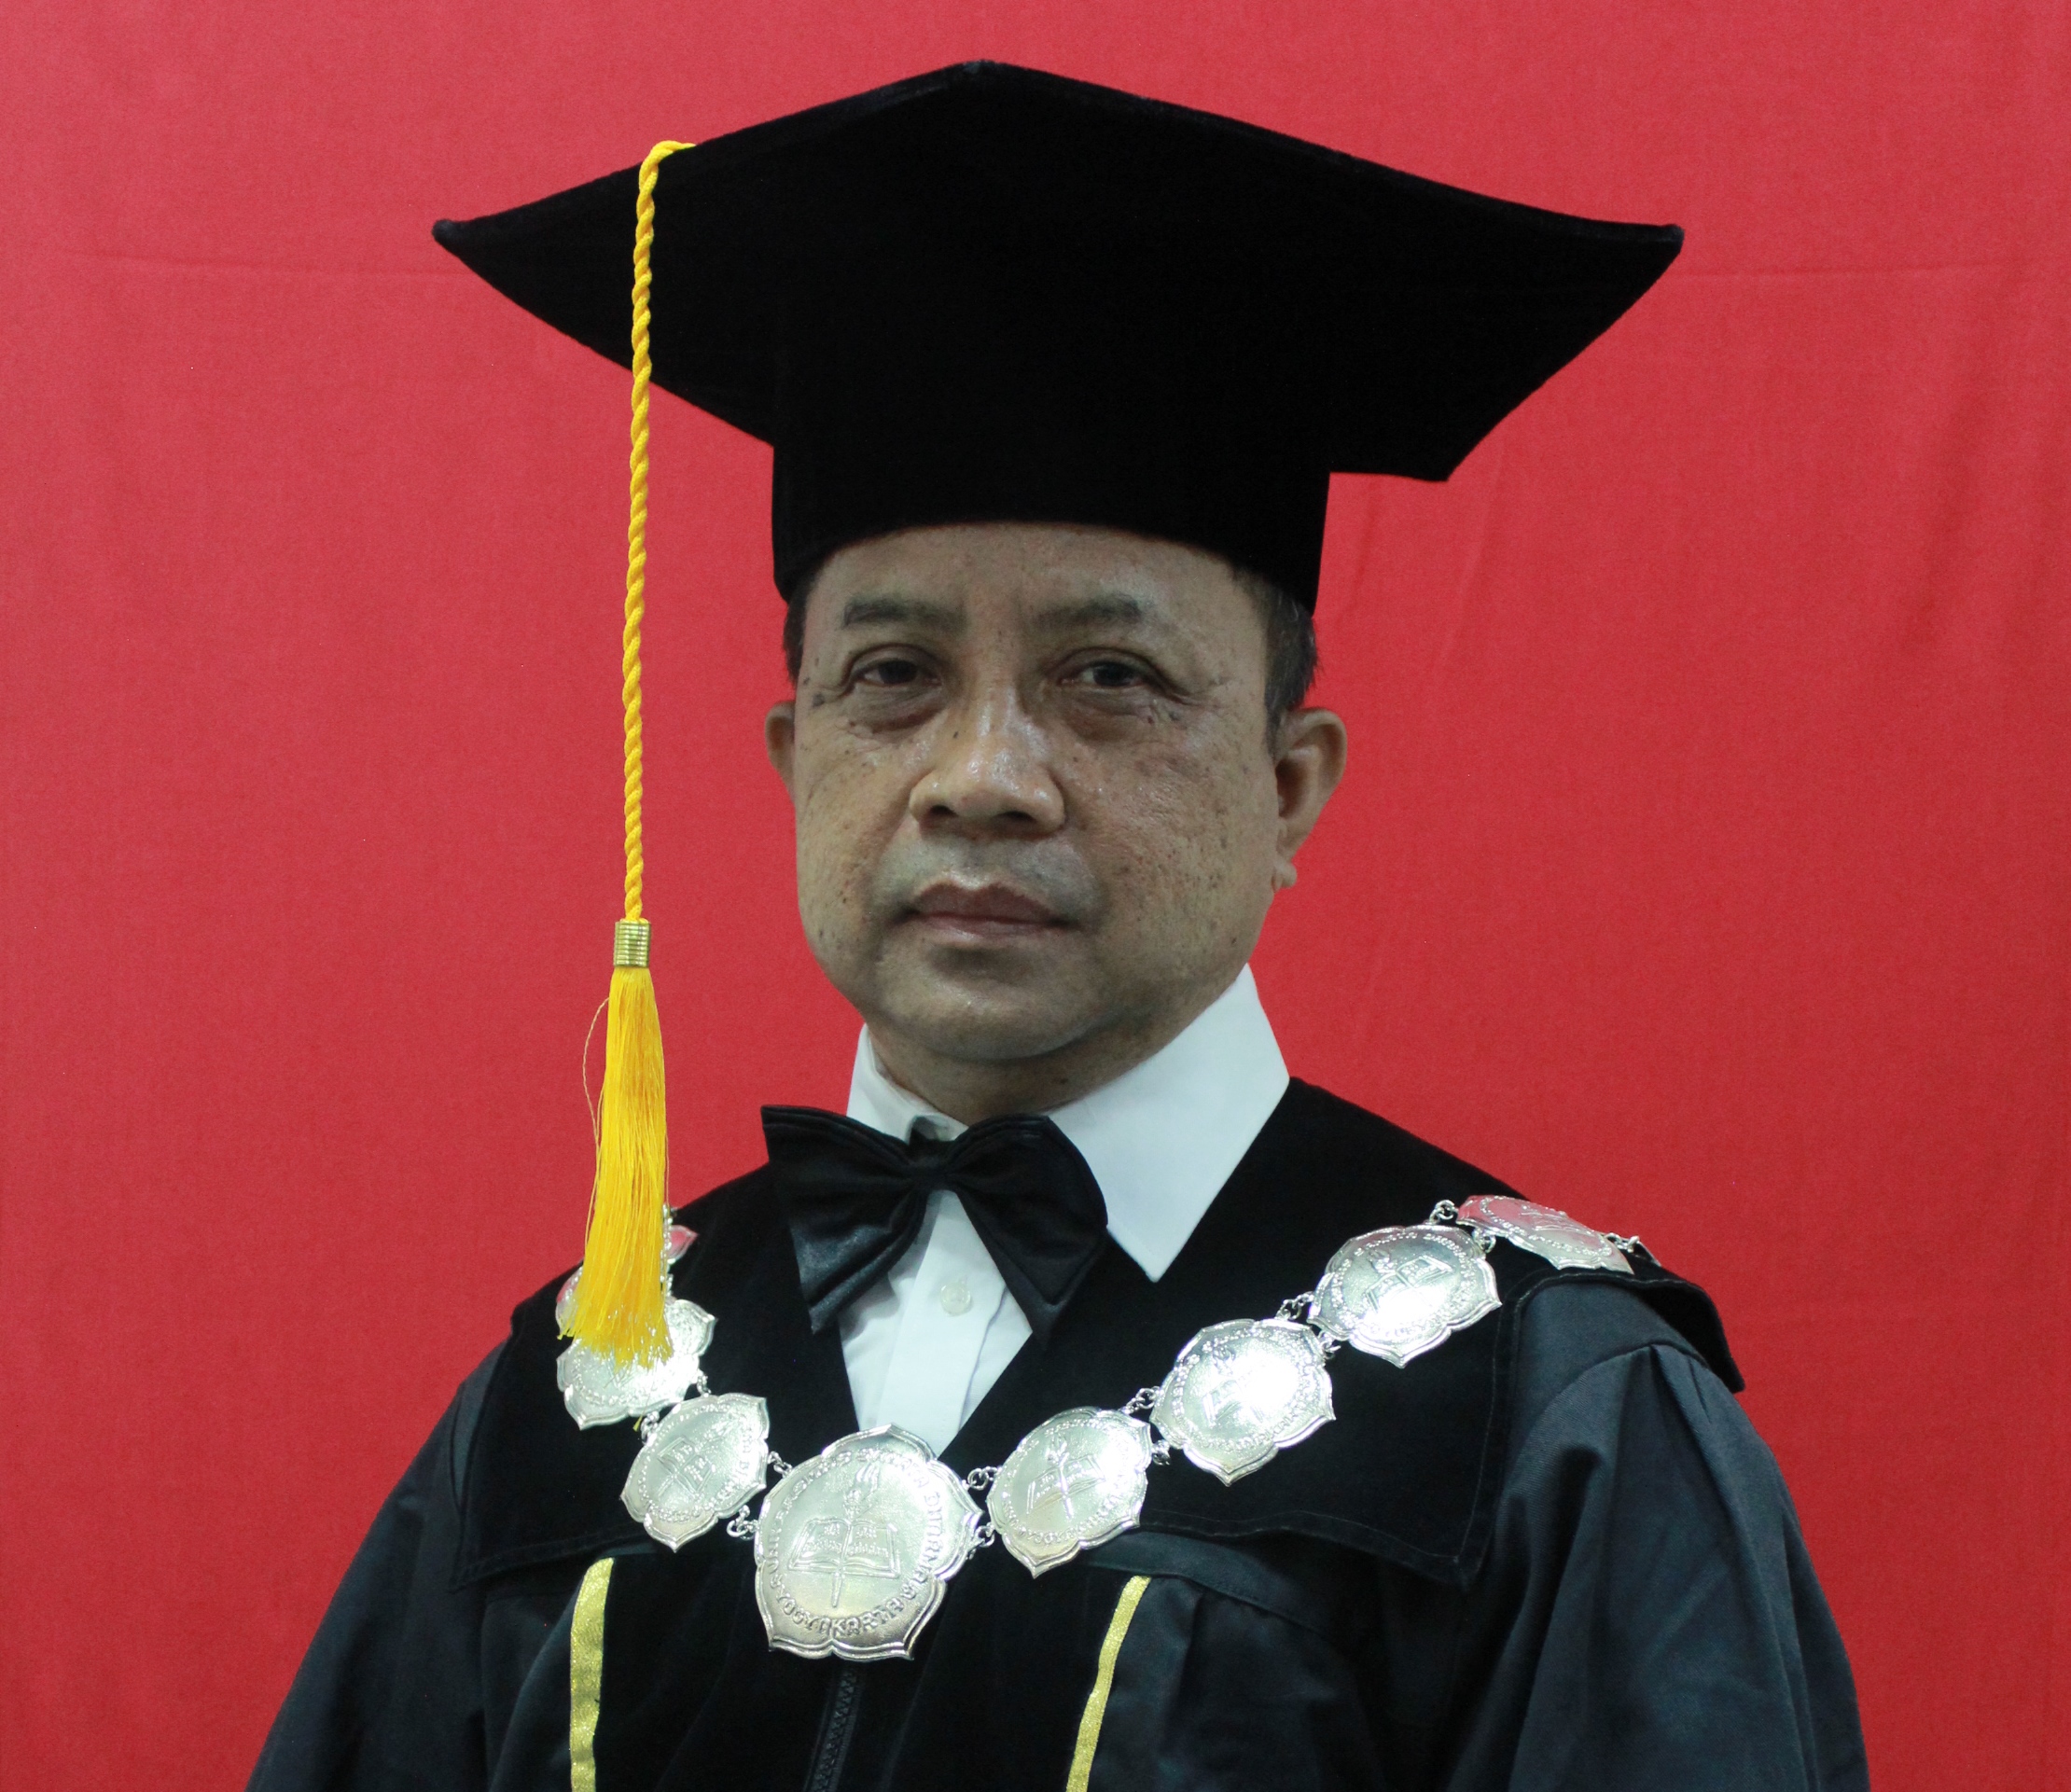 Ucapan Selamat Datang Dekan FKIP :: Fakultas Keguruan dan Ilmu Pendidikan USD Yogyakarta